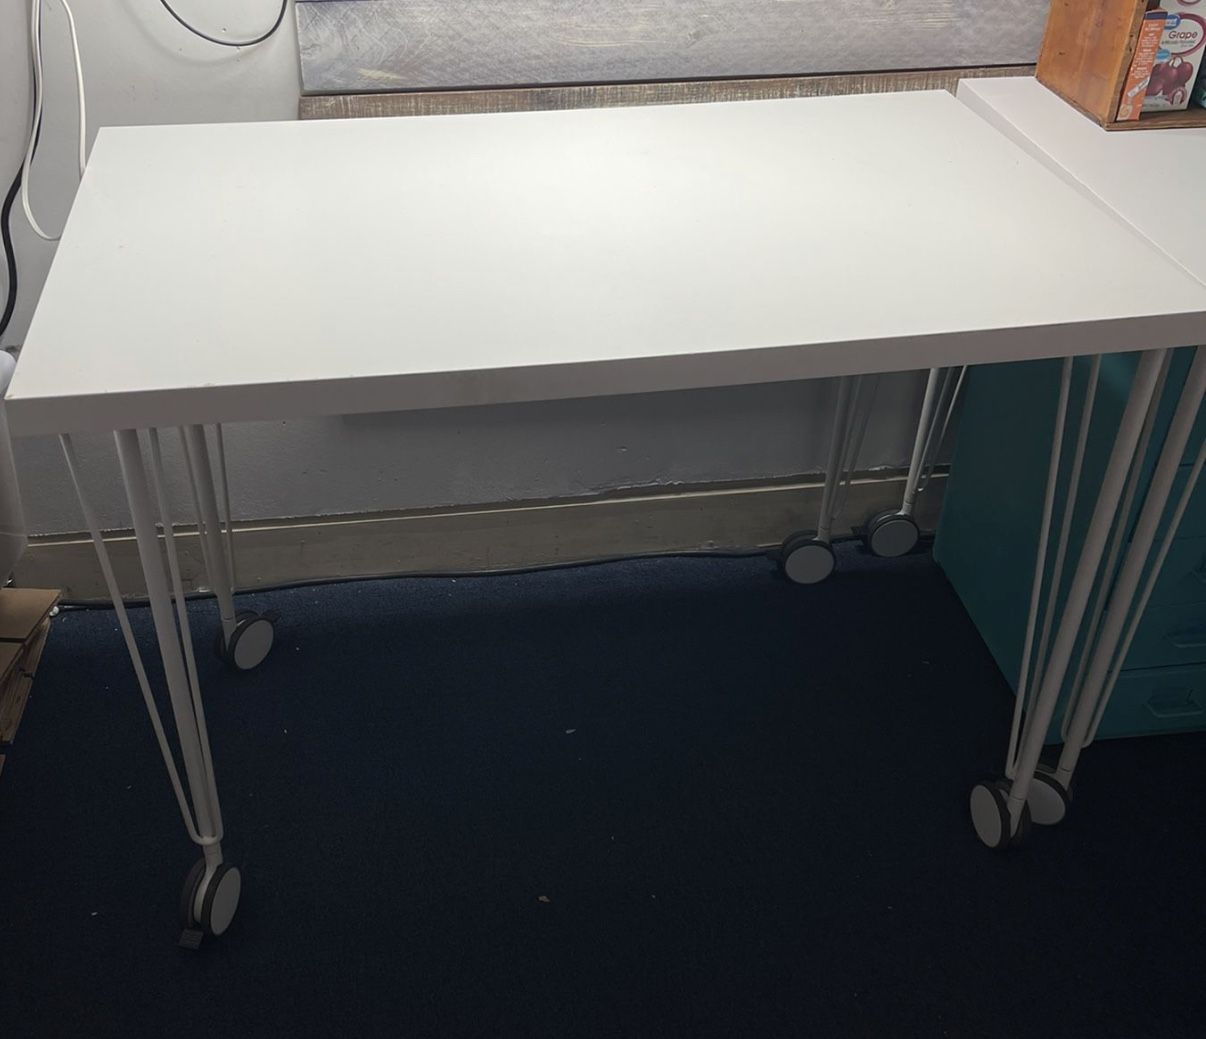 Ikea Linnmon  Desk Top With Krille Rolling Metal Legs (39” L X 23.8” D)